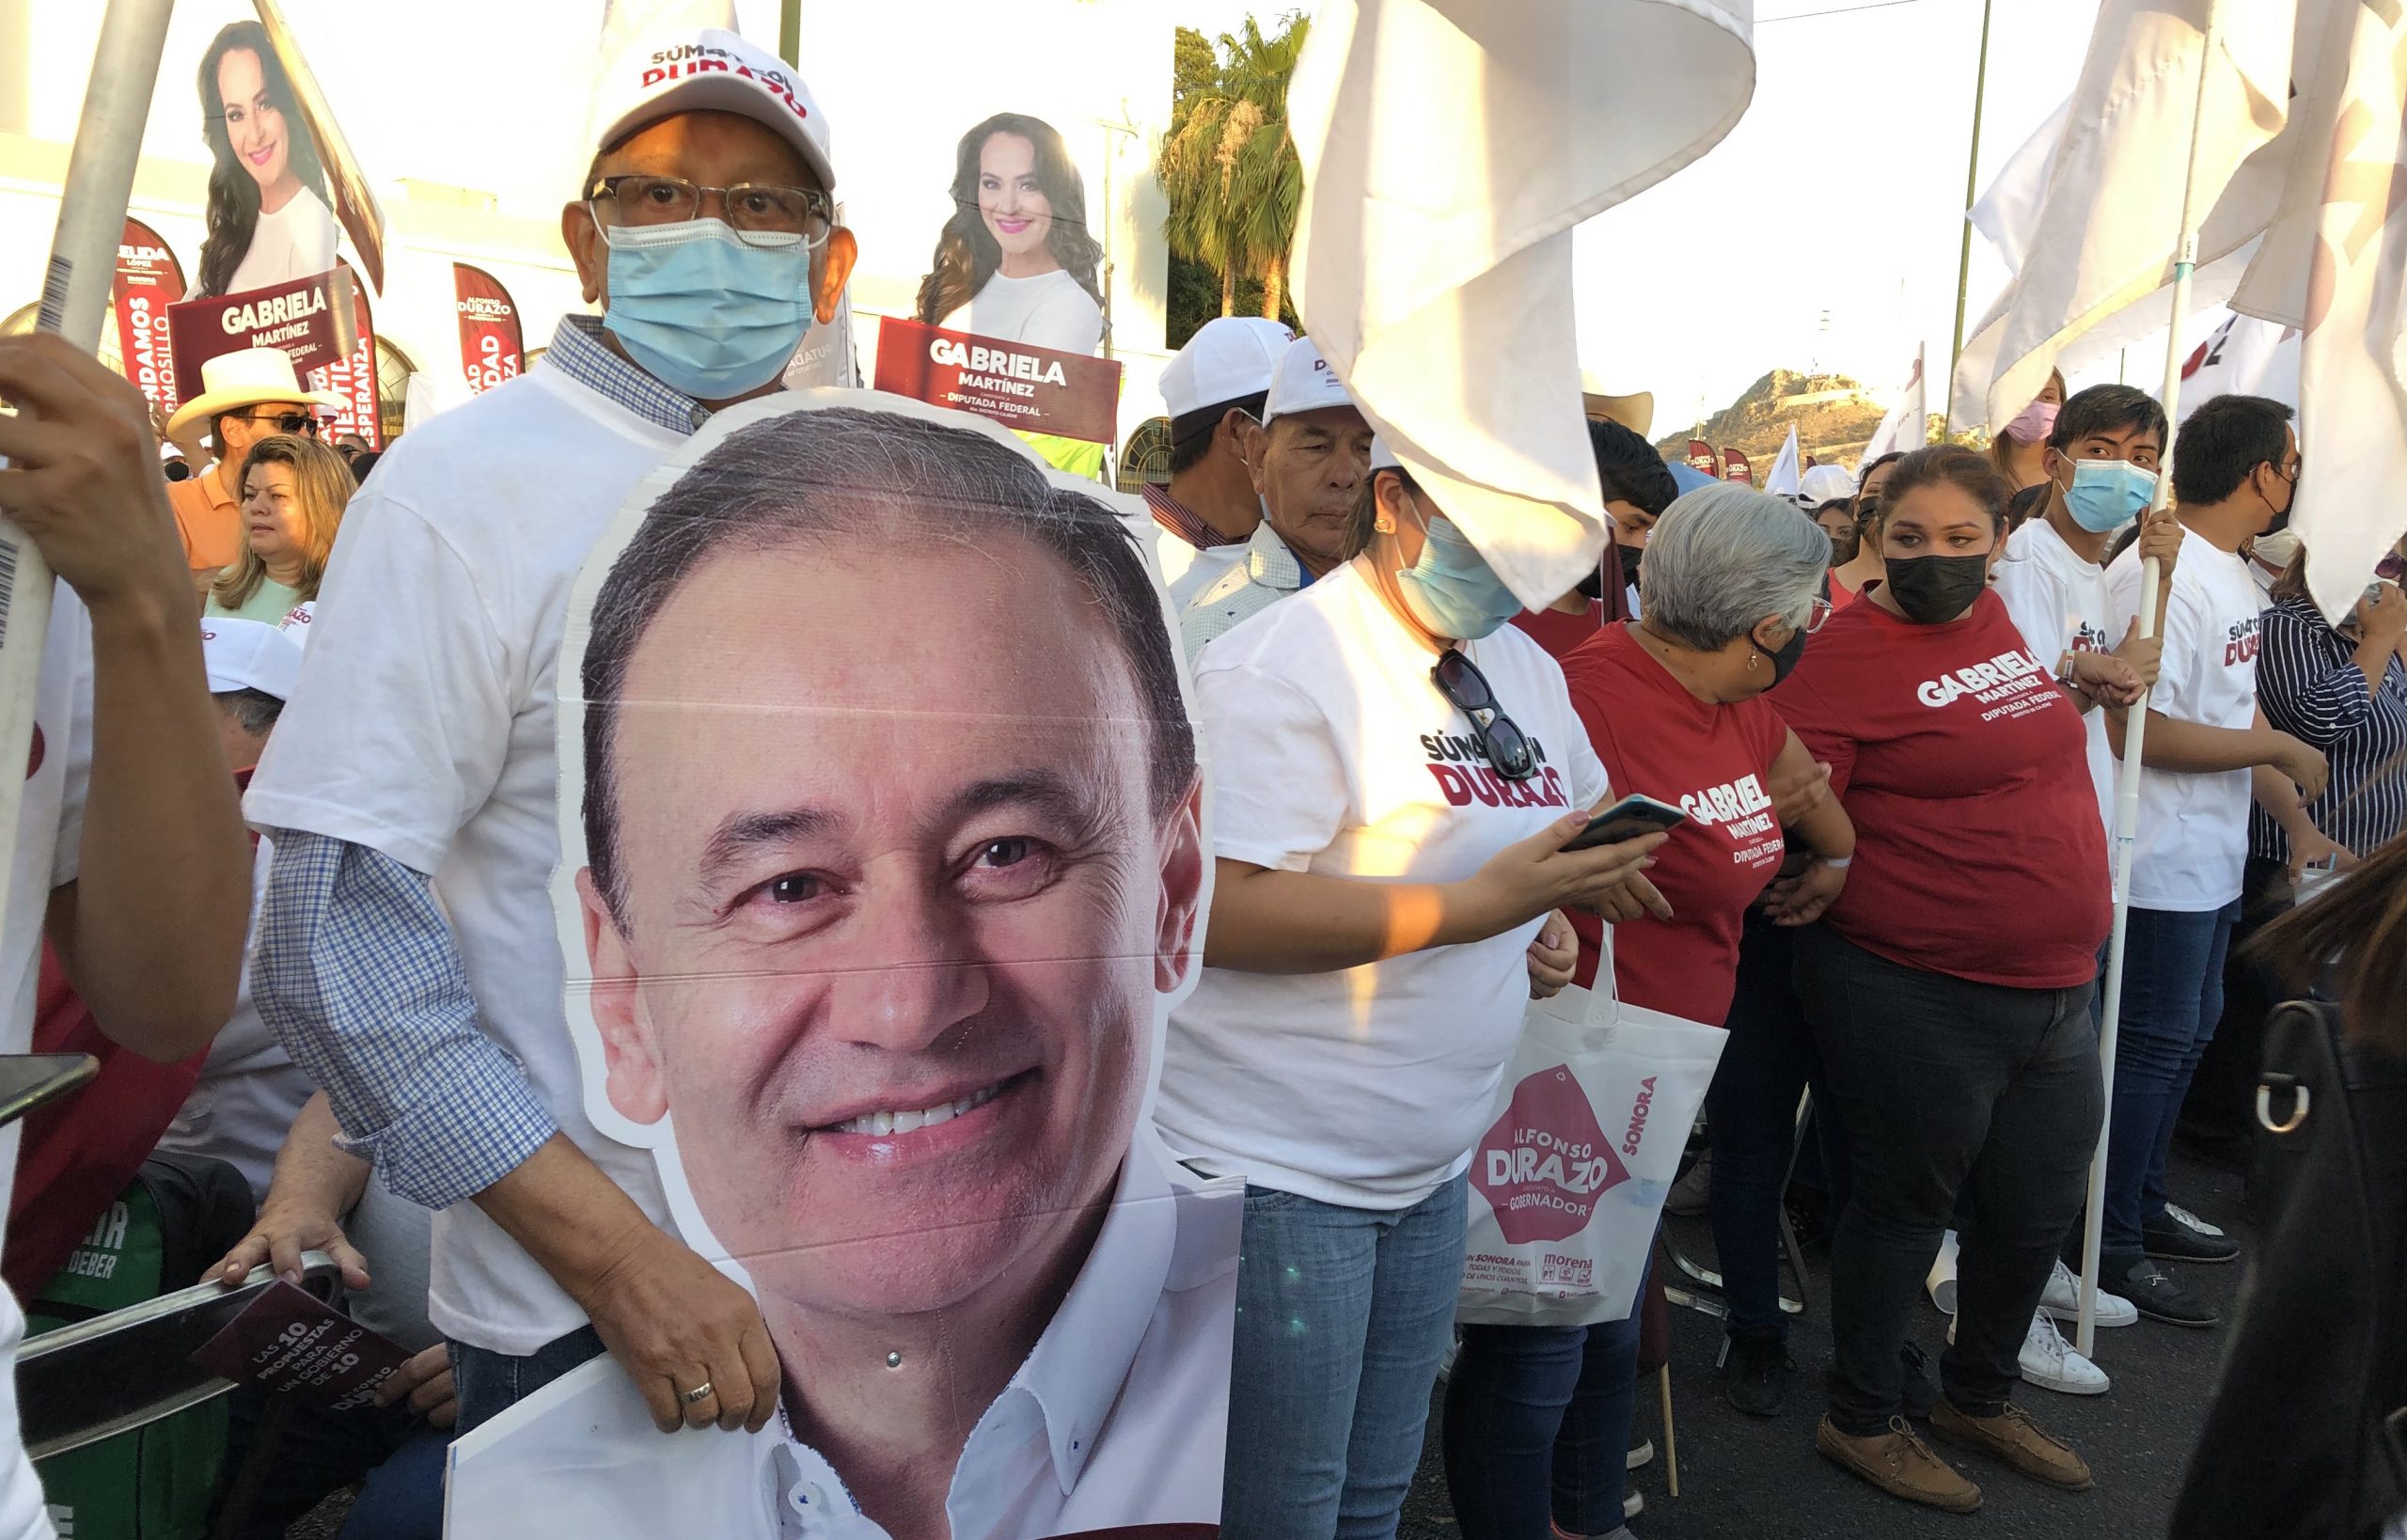 Durazo, candidato encumbrado por ola de AMLO que busca ganar Sonora